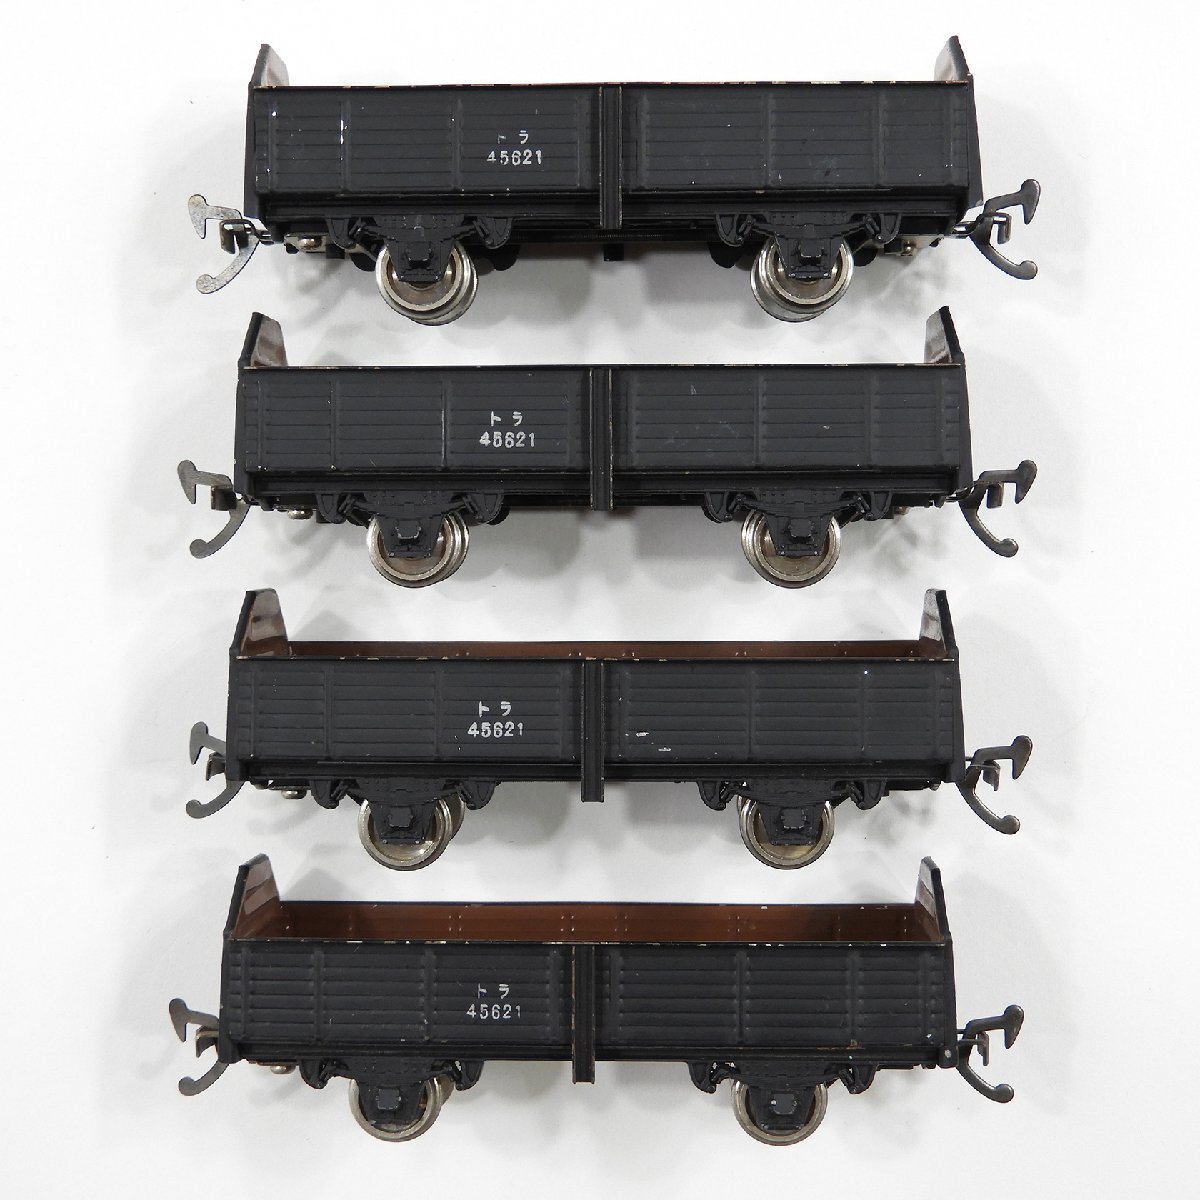  тигр 45000×6se6000×3semf1000 10 обе #18328 железная дорога модель хобби коллекционный набор продажа комплектом 